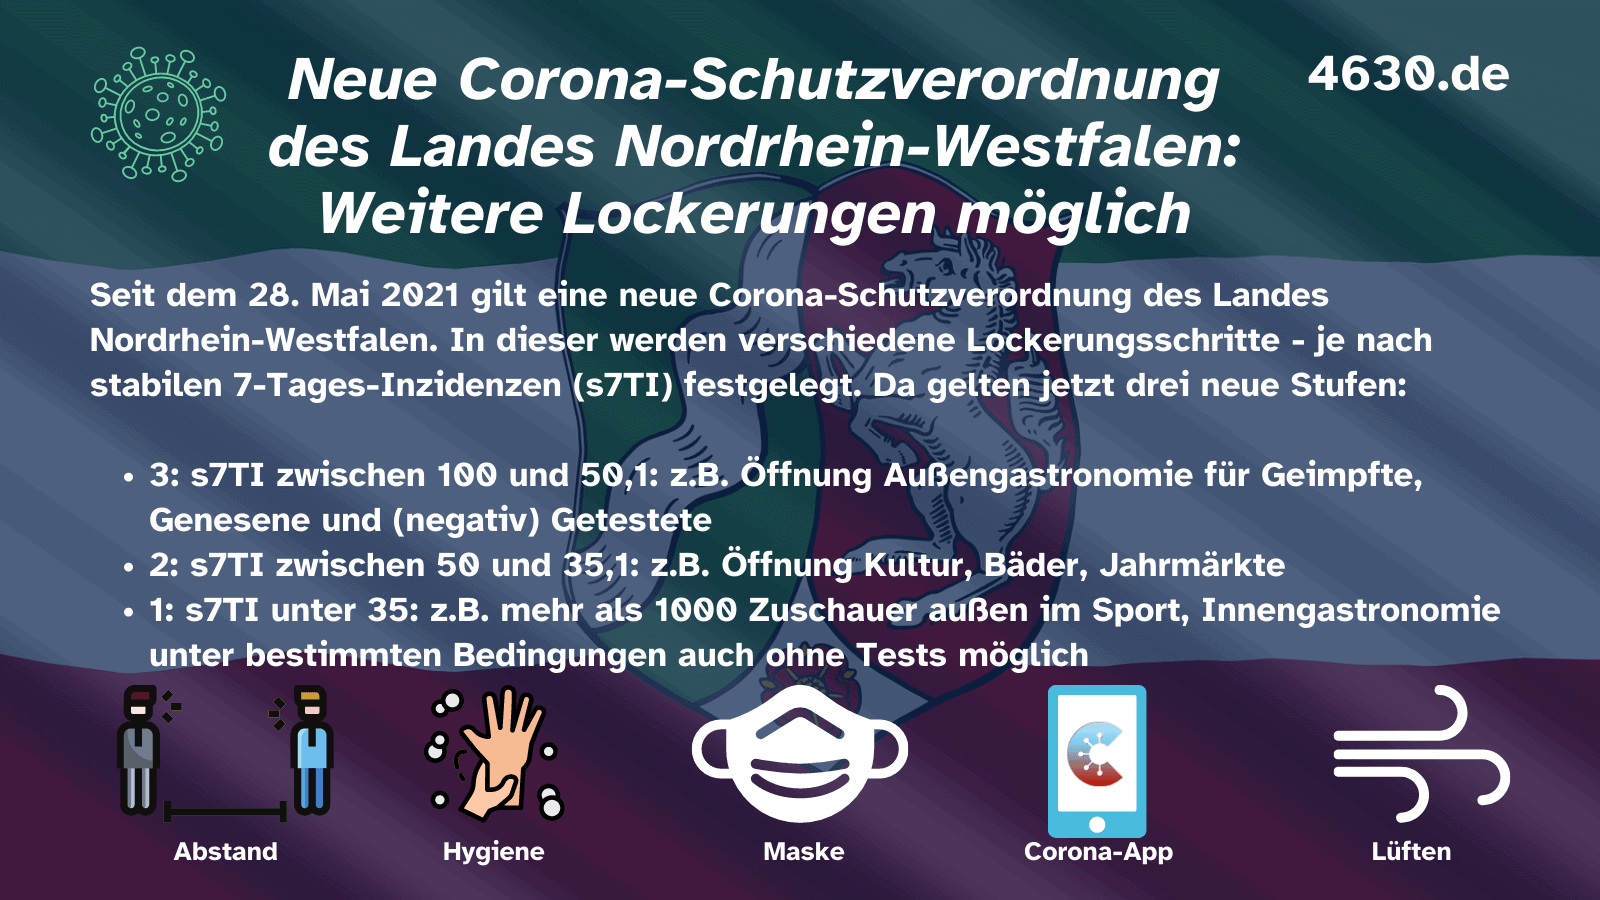 Neue Corona-Schutzverordnung des Landes Nordrhein-Westfalen (ab 28. Mai 2021): Weitere Lockerungen möglich